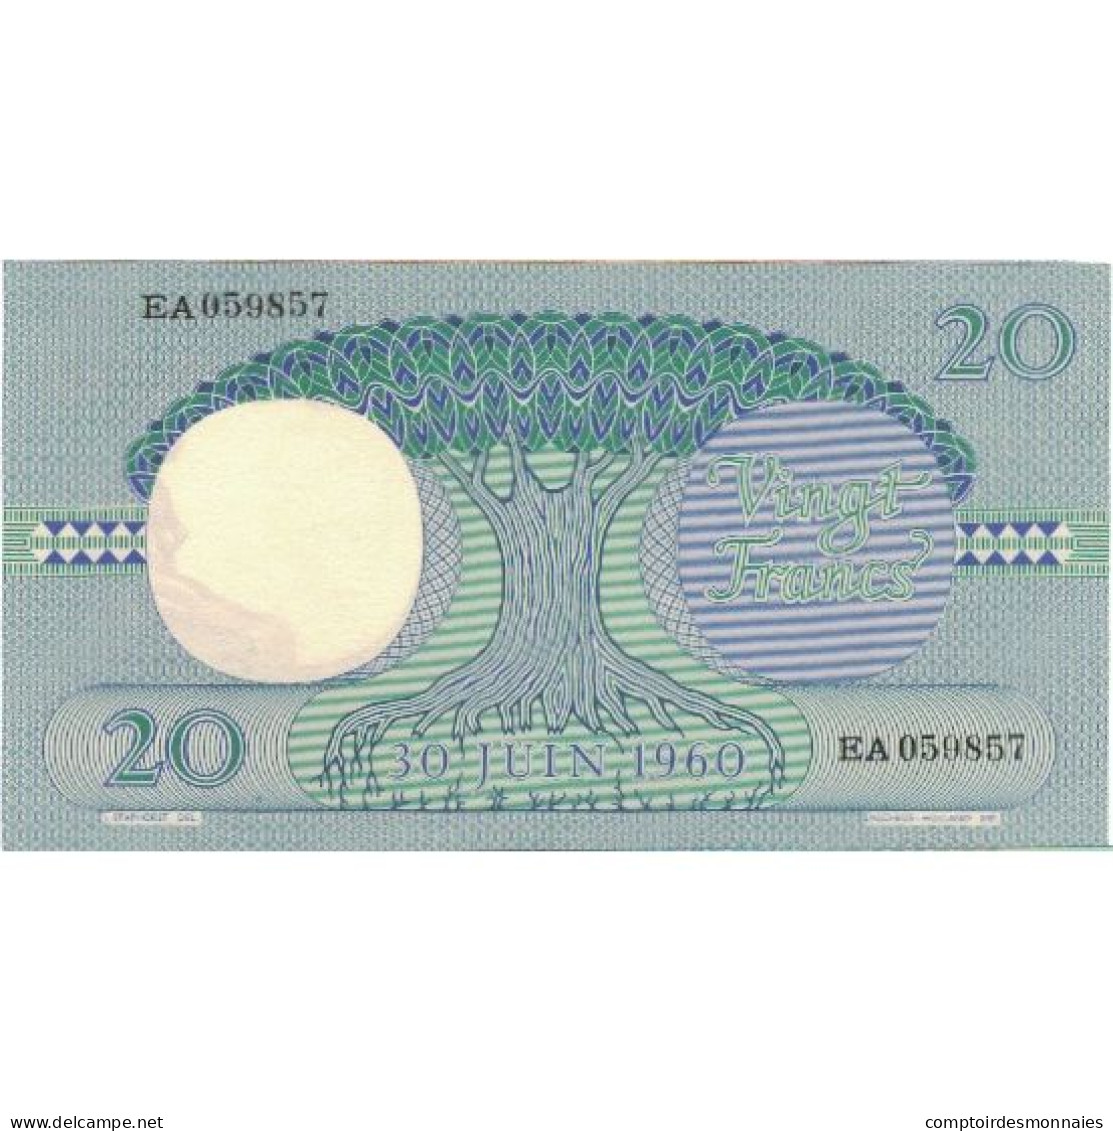 Billet, Congo Democratic Republic, 20 Francs, 1962, 1962-05-15, KM:4a, NEUF - Democratic Republic Of The Congo & Zaire